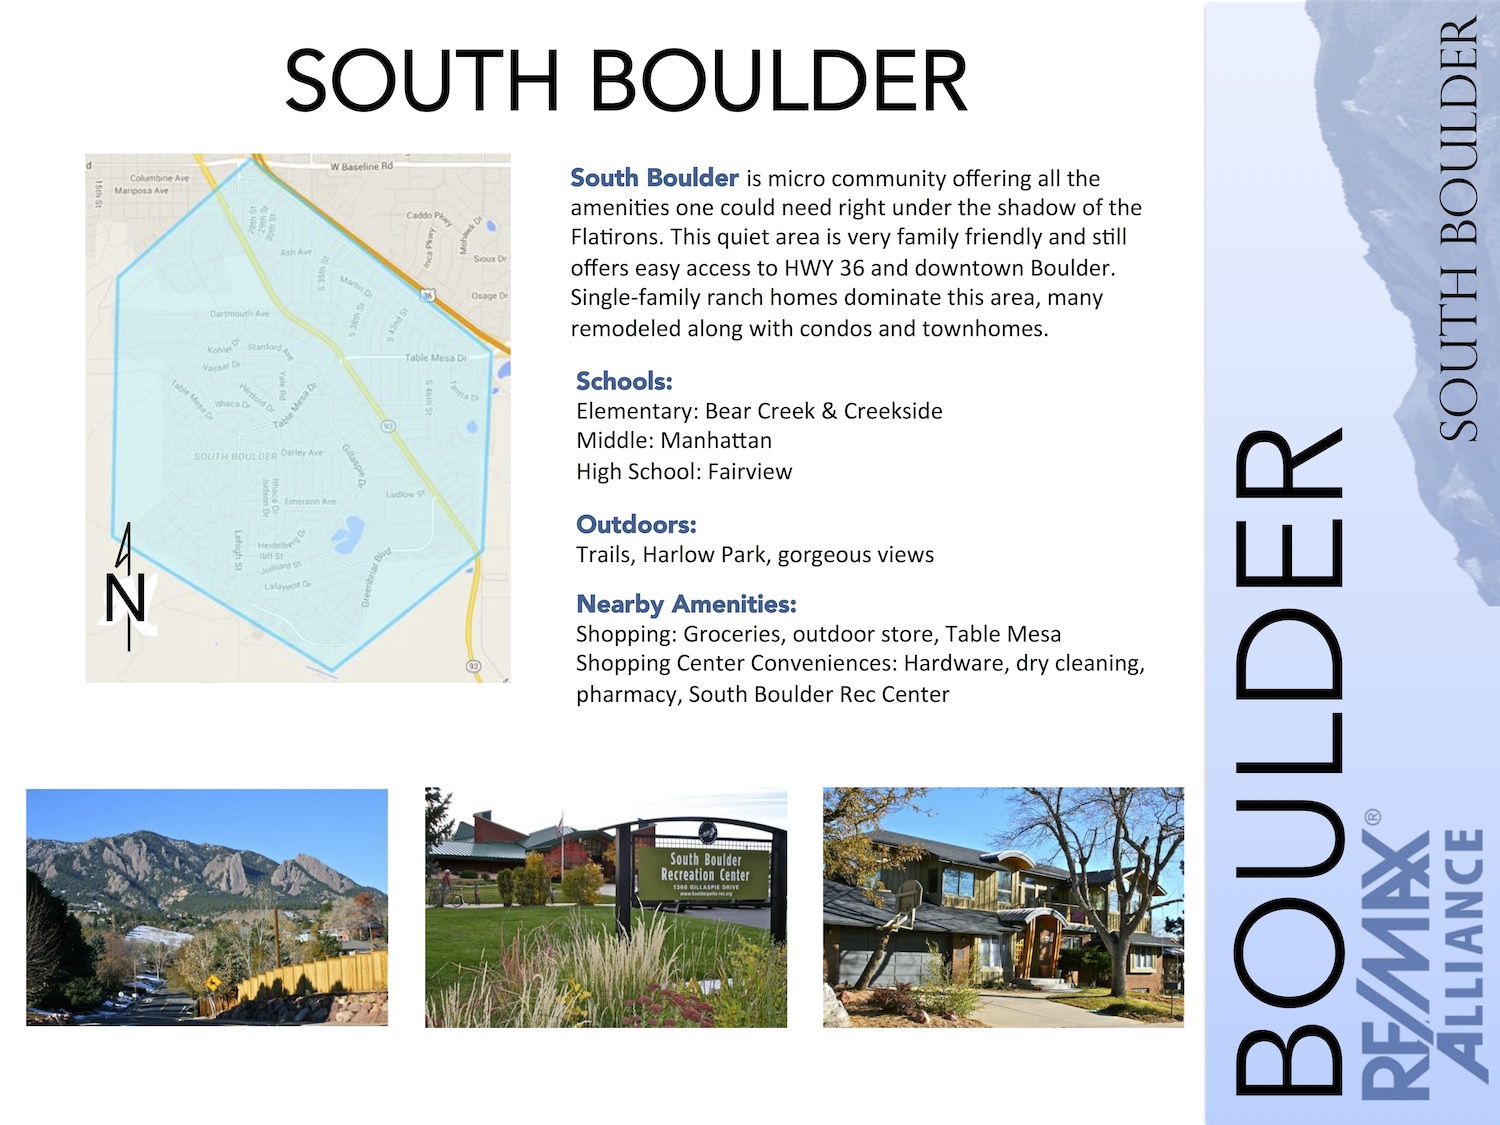 South Boulder, Colorado